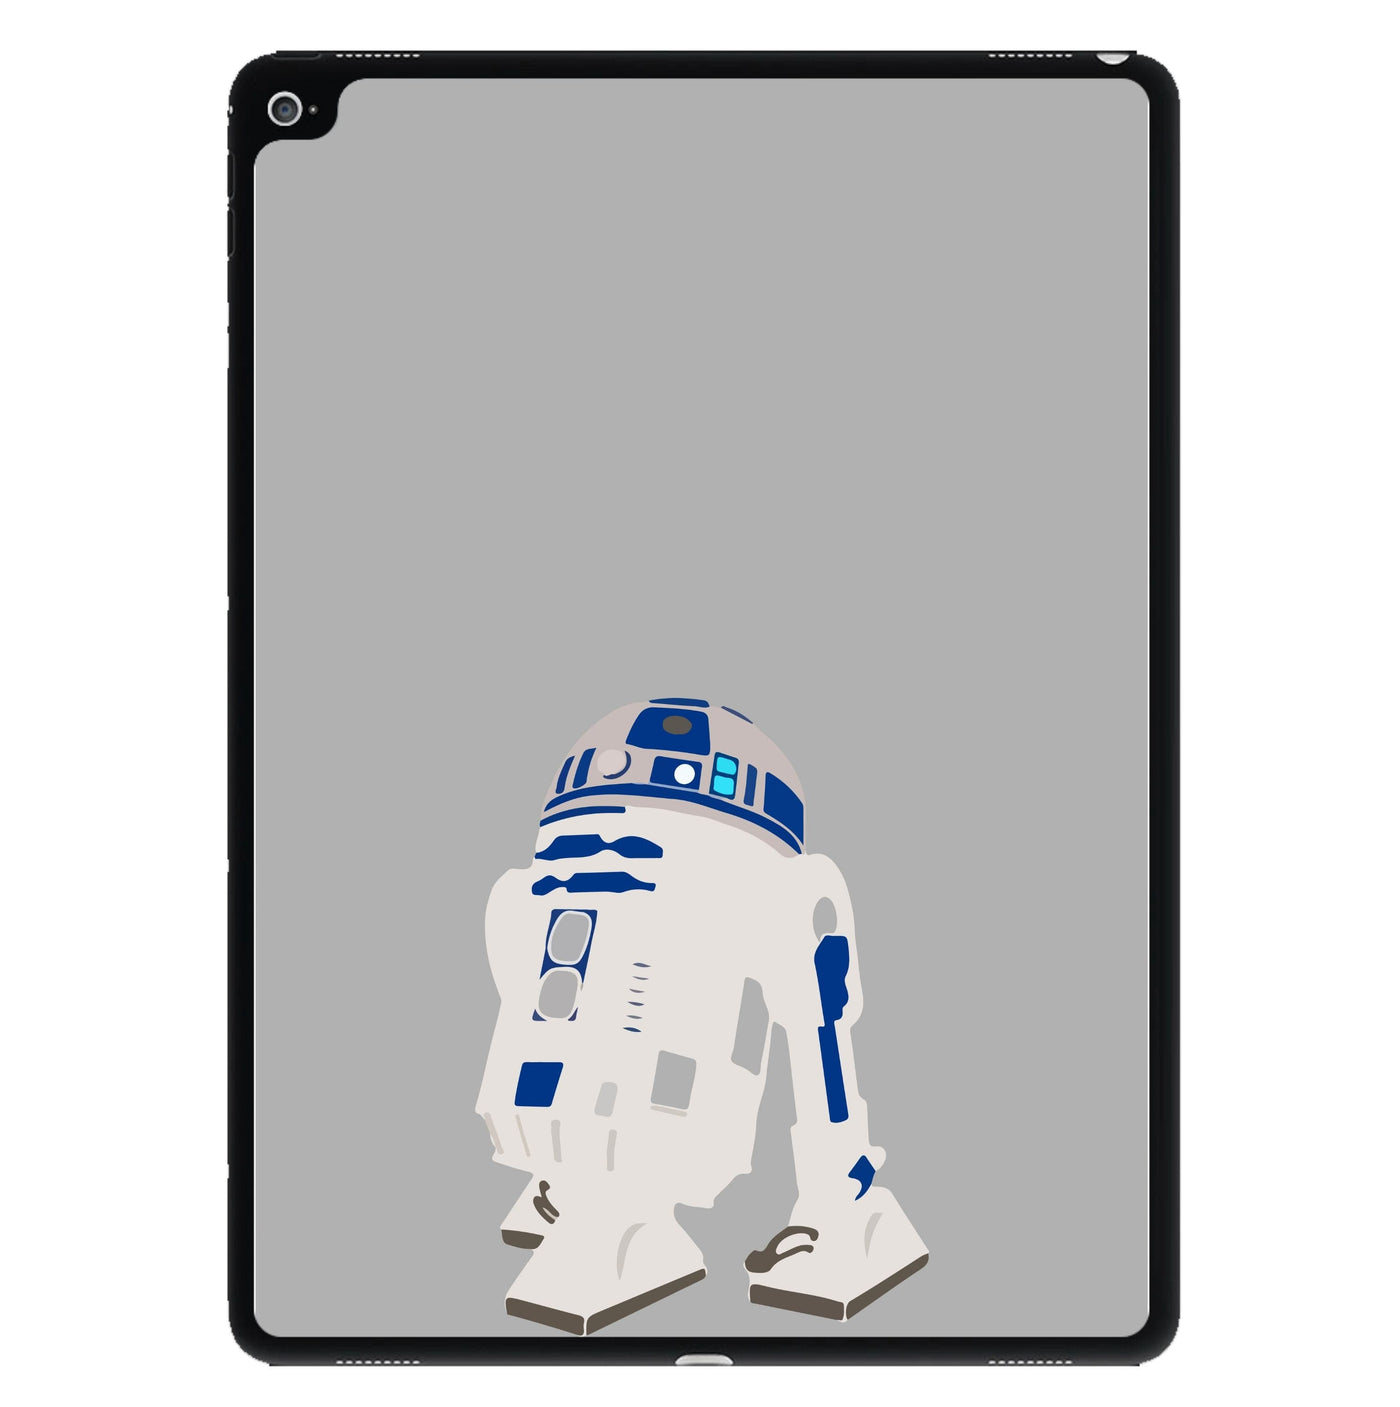 R2D2 - Star Wars iPad Case